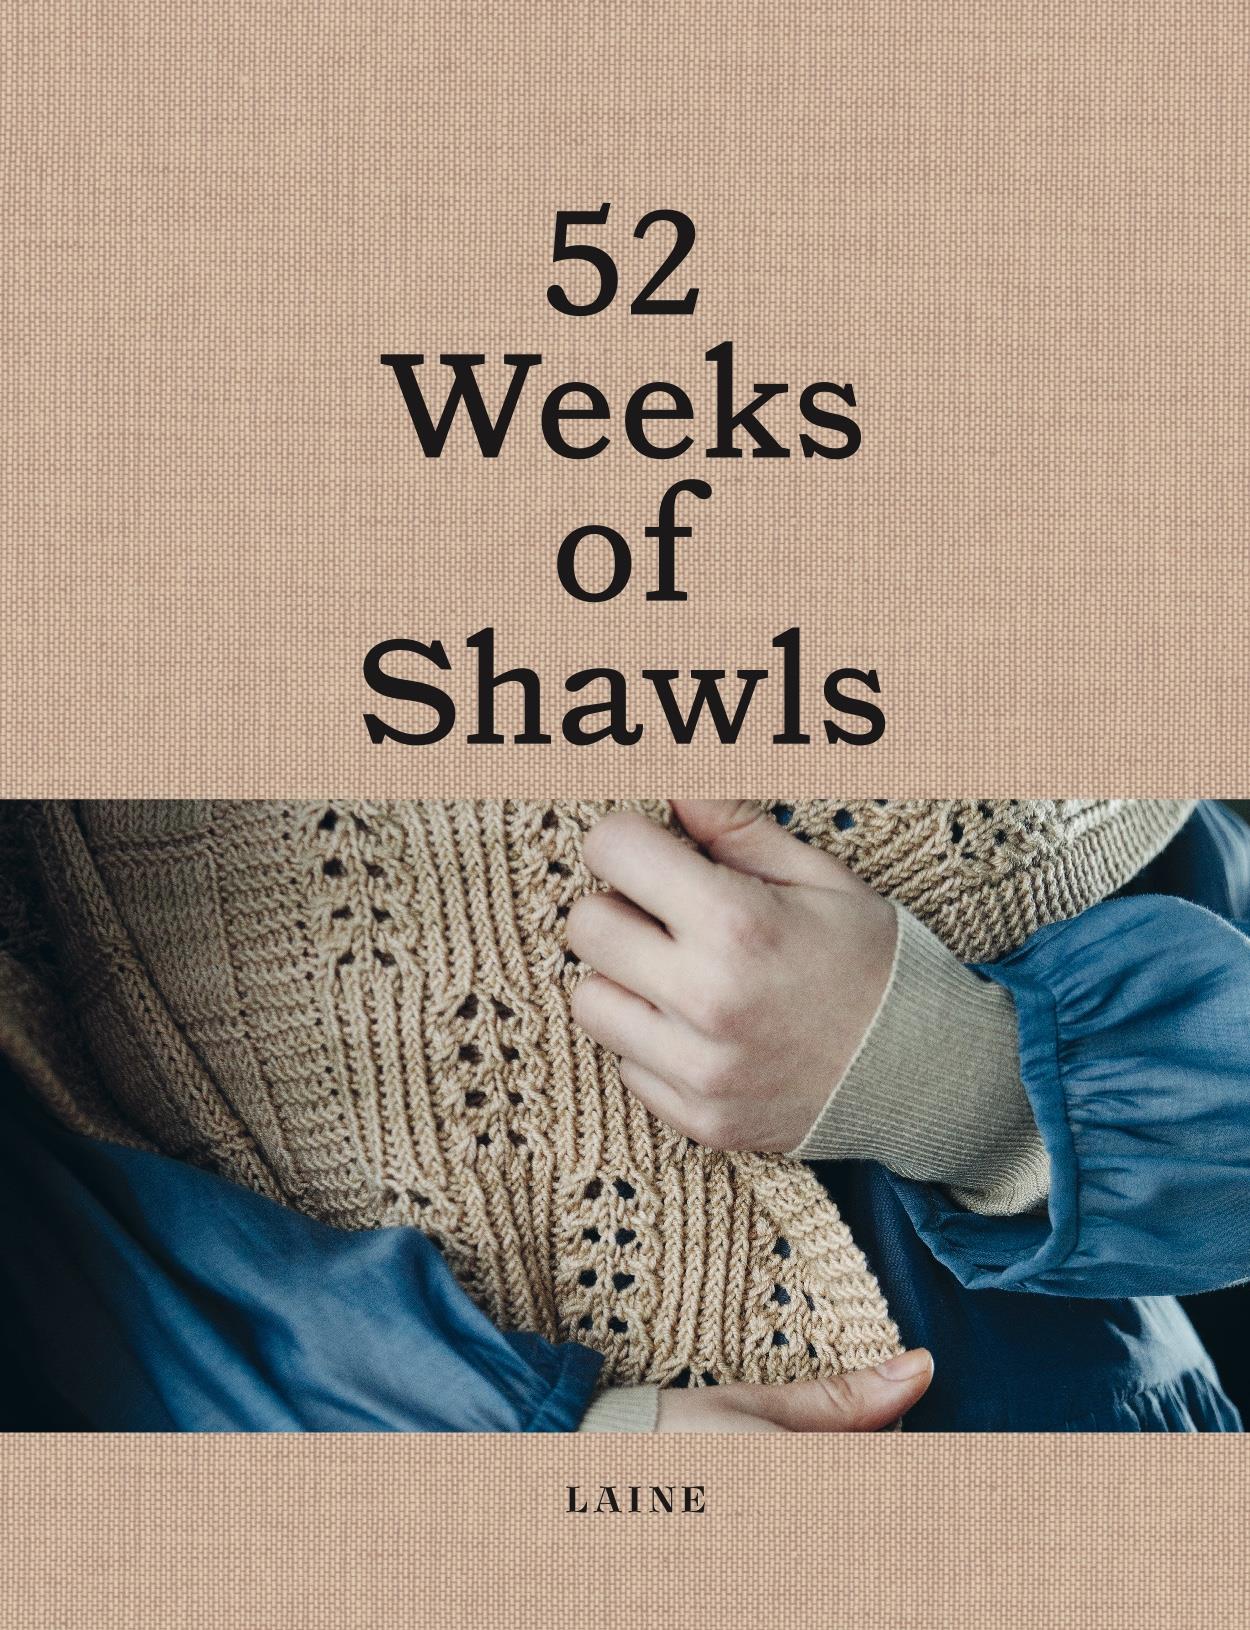 Irreplaceable revidere Underholdning 52 weeks of shawls